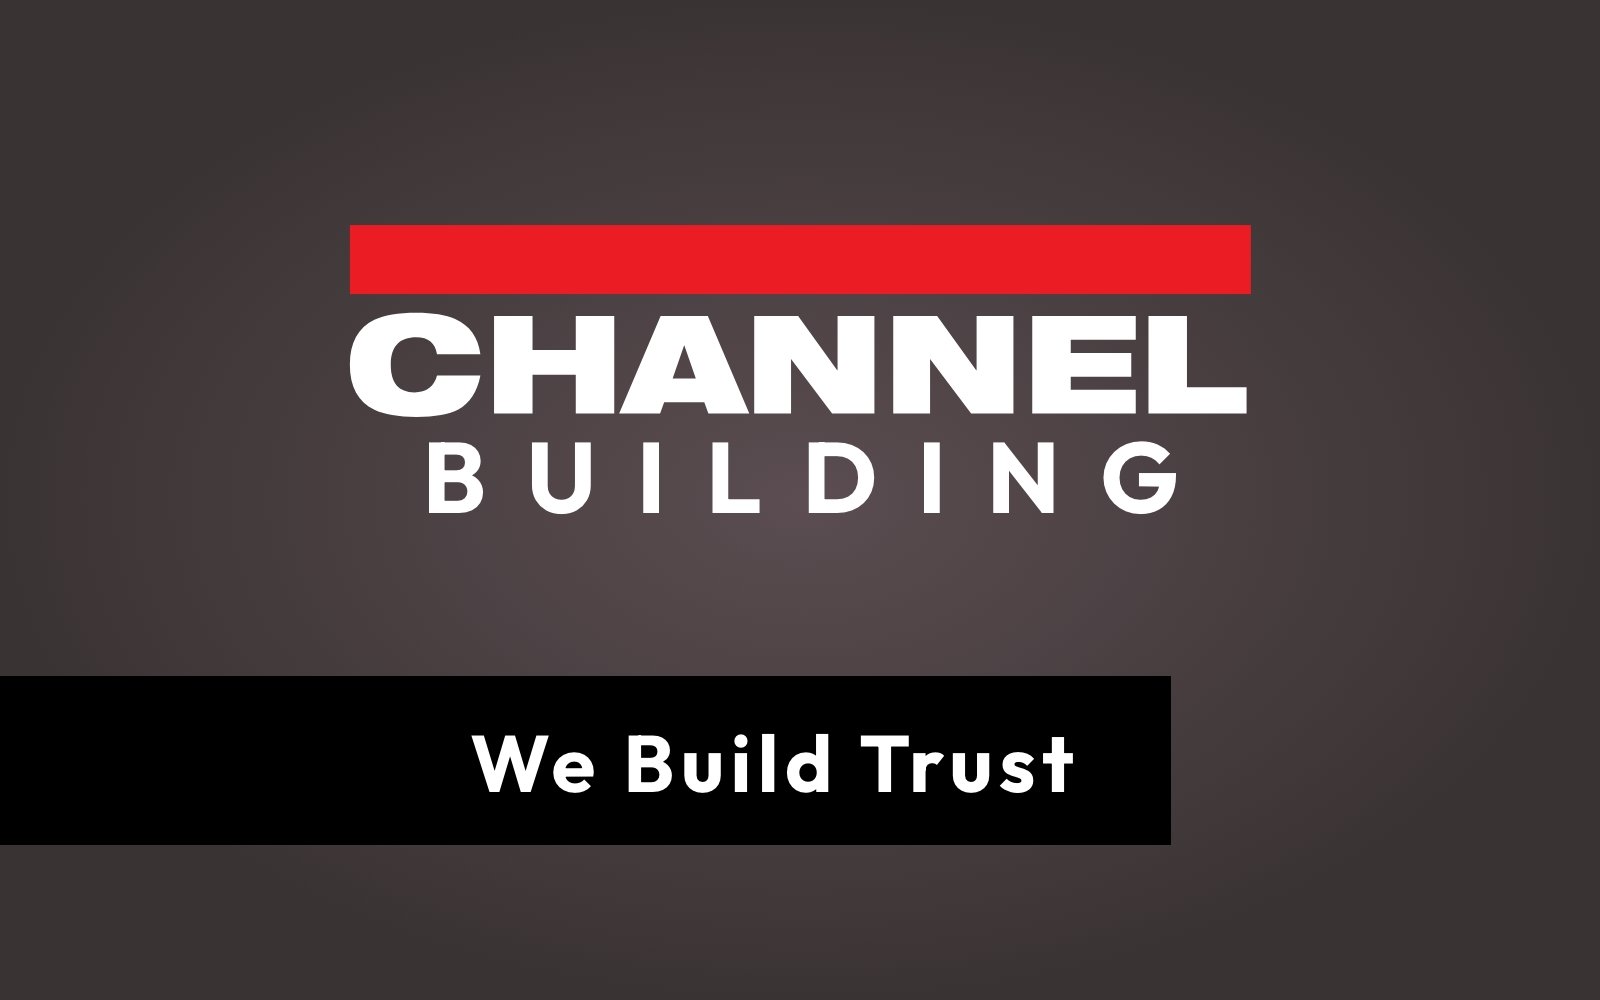 We Build Trust graphic